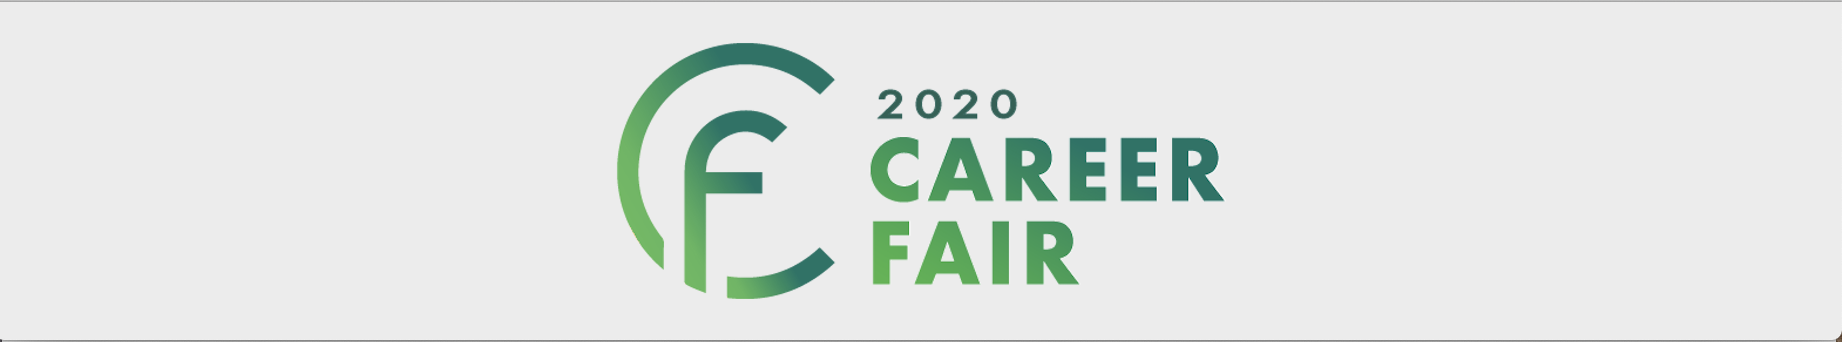 MIT career fairs 2020